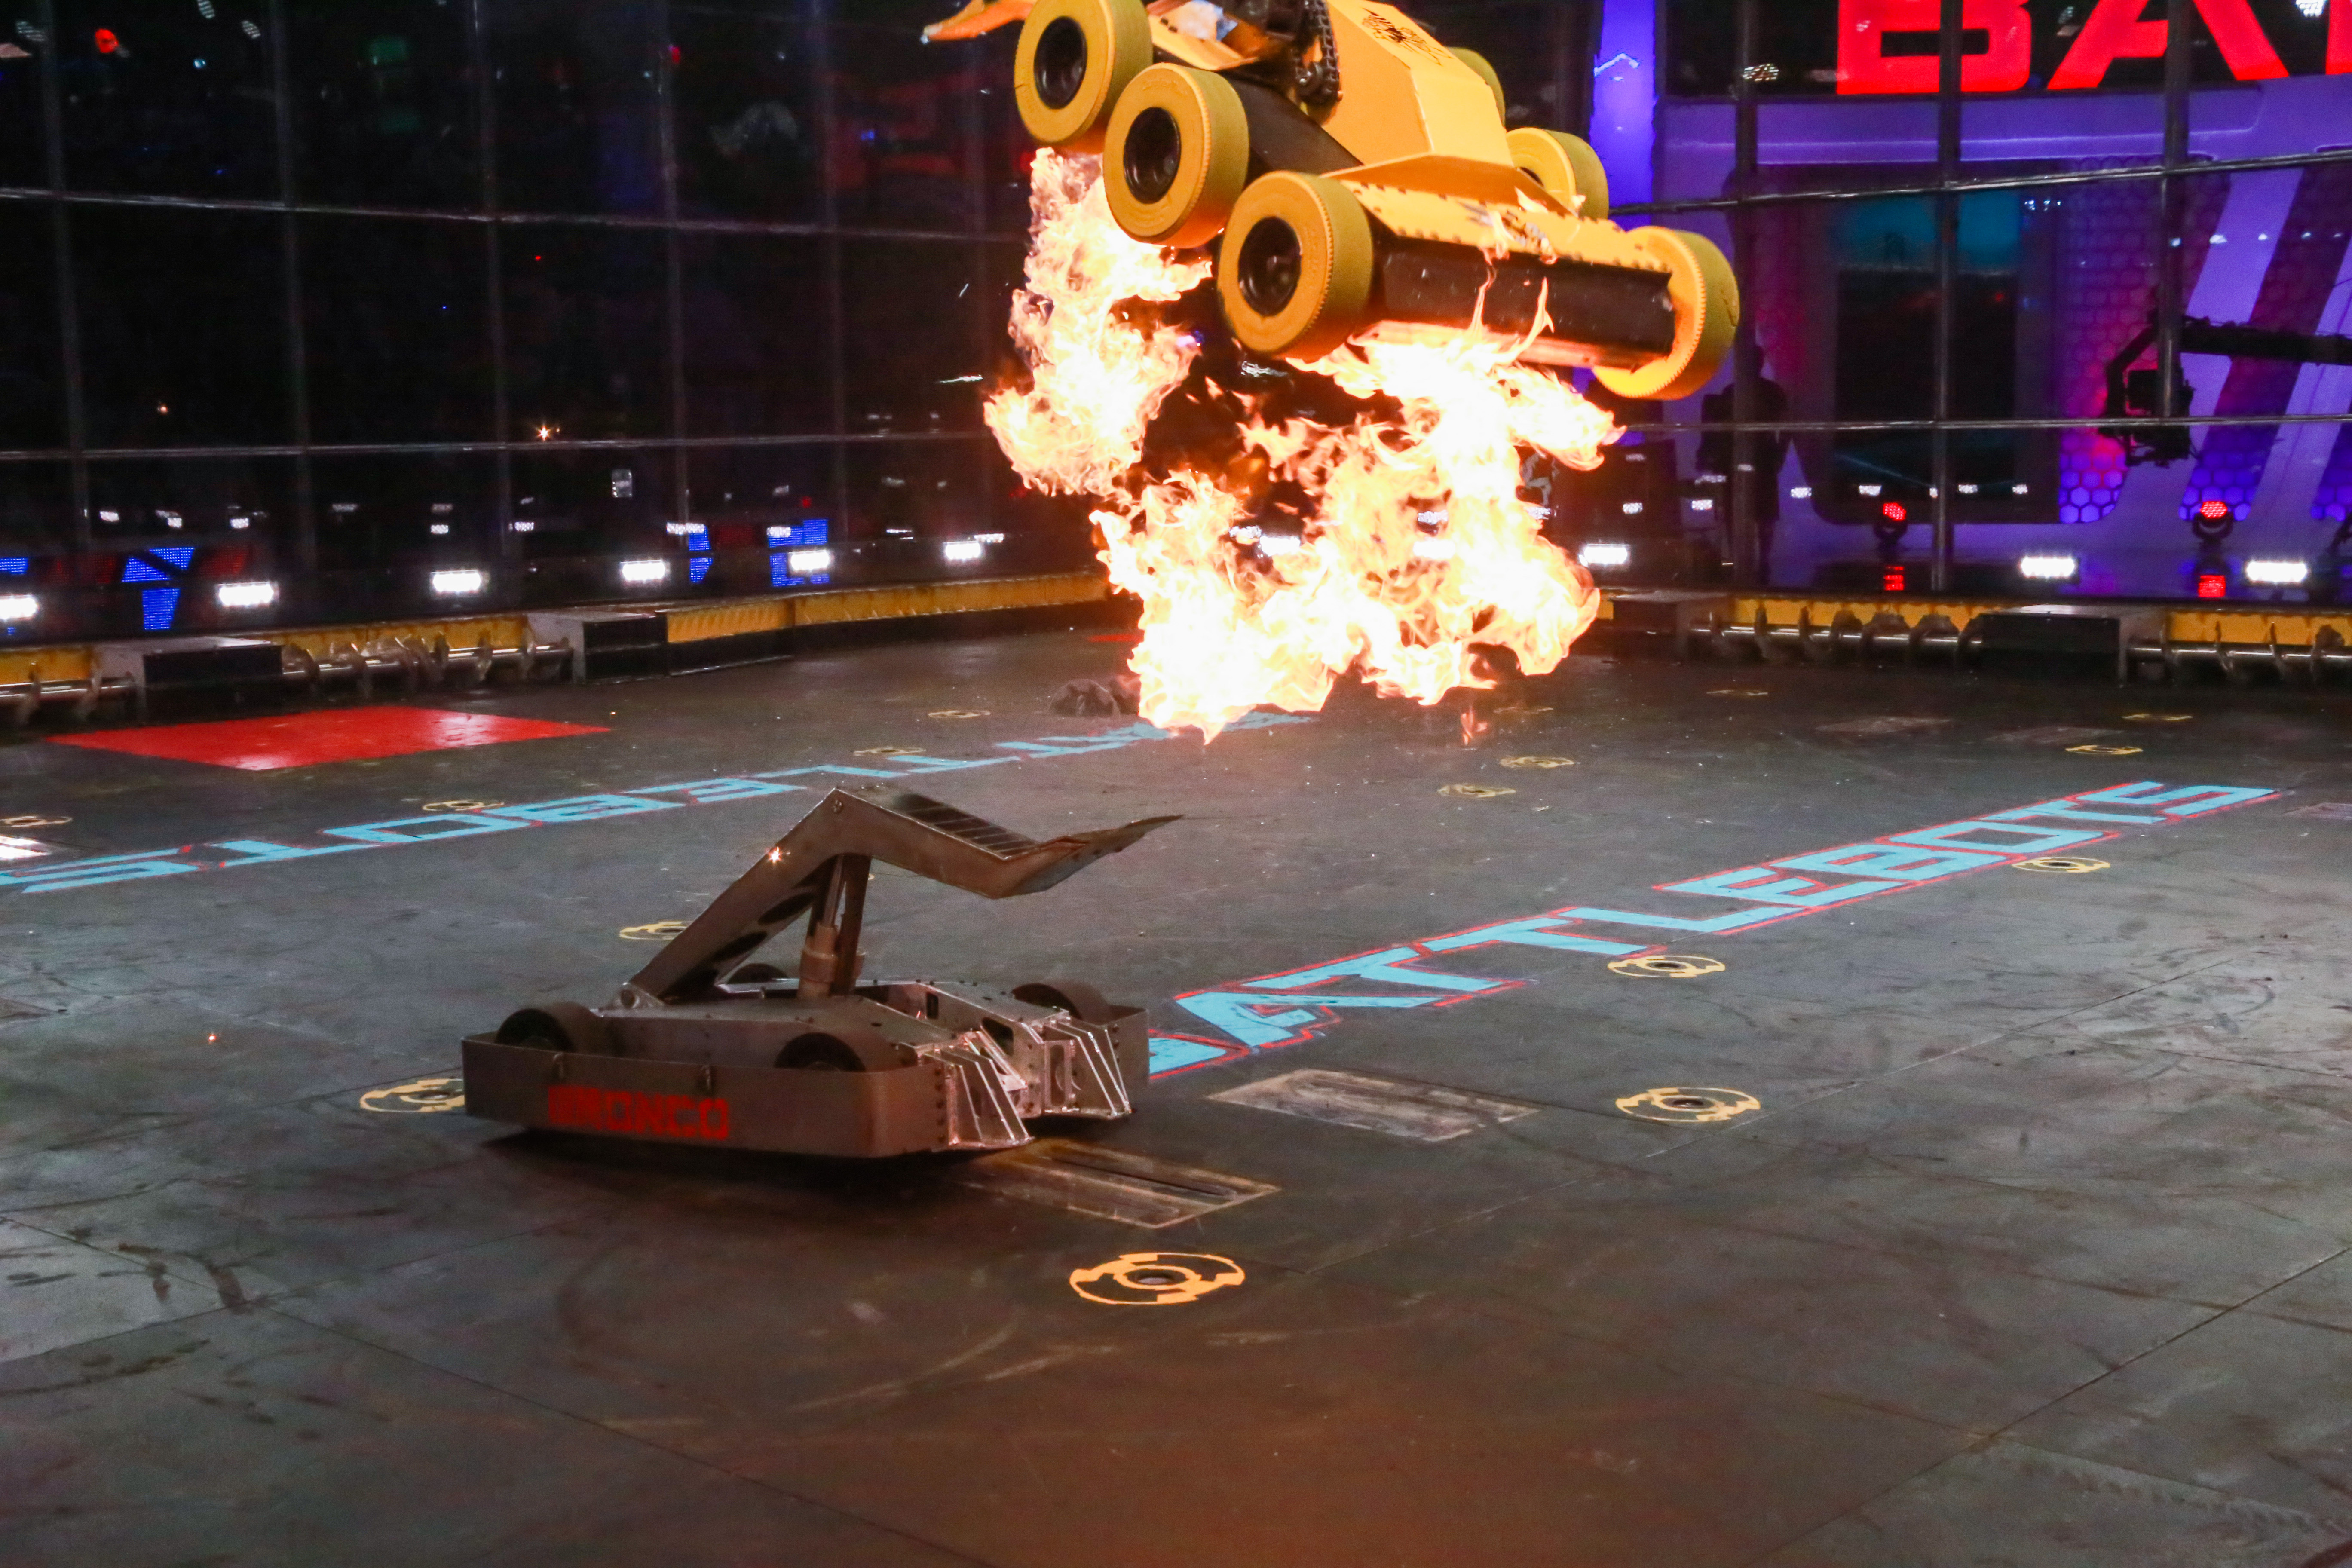 Битва роботов прямая. Битва роботов шоу Дискавери. Батл ботс битвы роботов. Битва роботов на арене шоу.